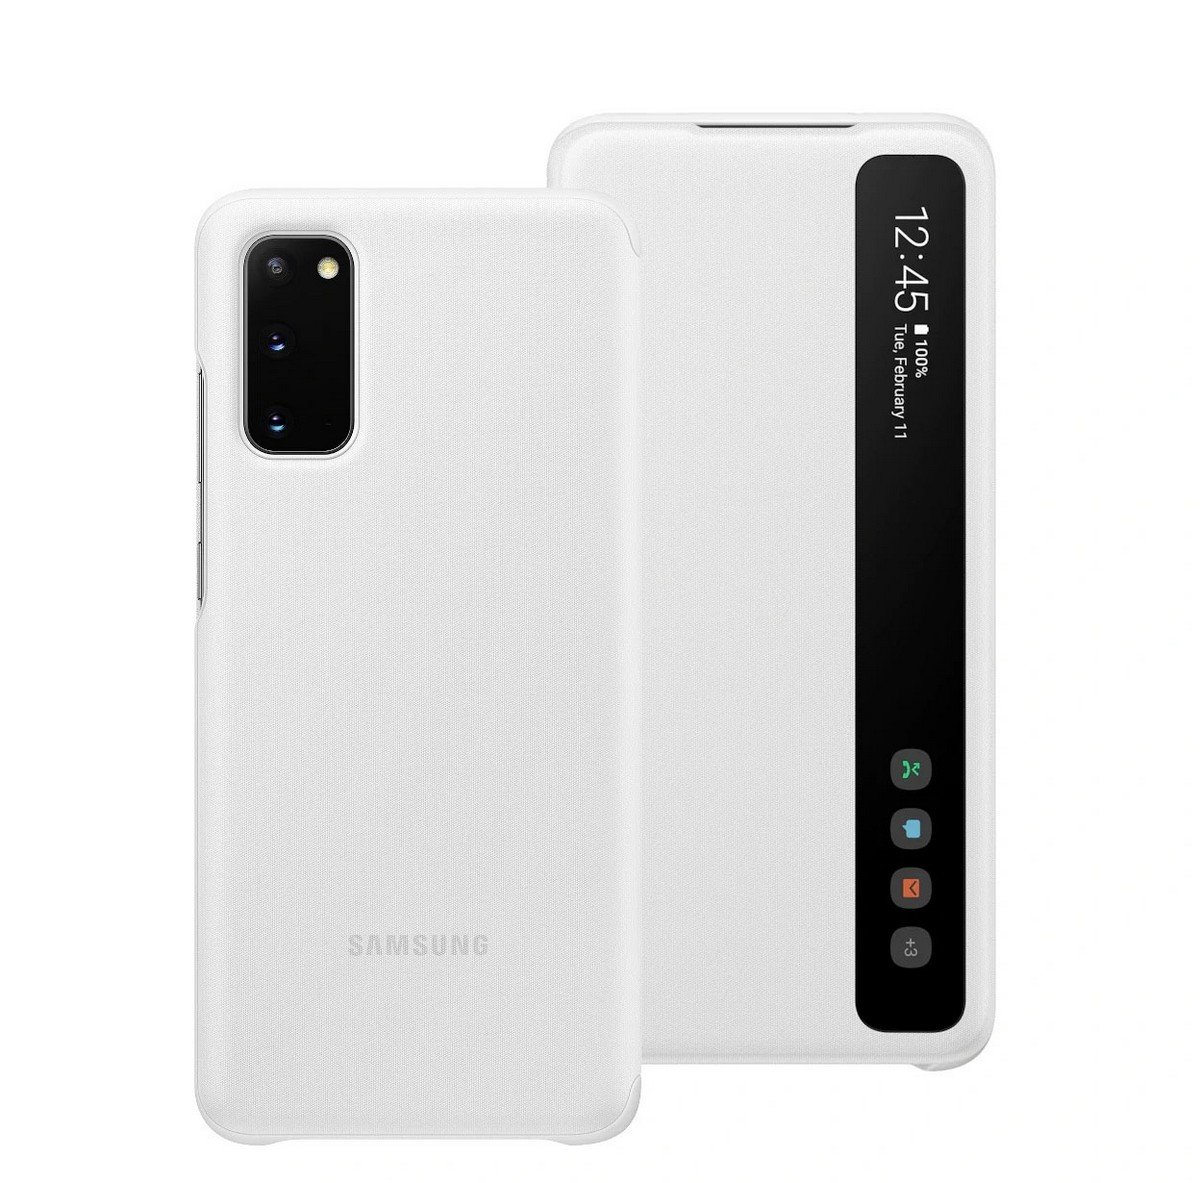 Etui Samsung Clear View Cover White do Galaxy S20 EF-ZG980CWEGEU. Lżejszy i wygodniejszy.